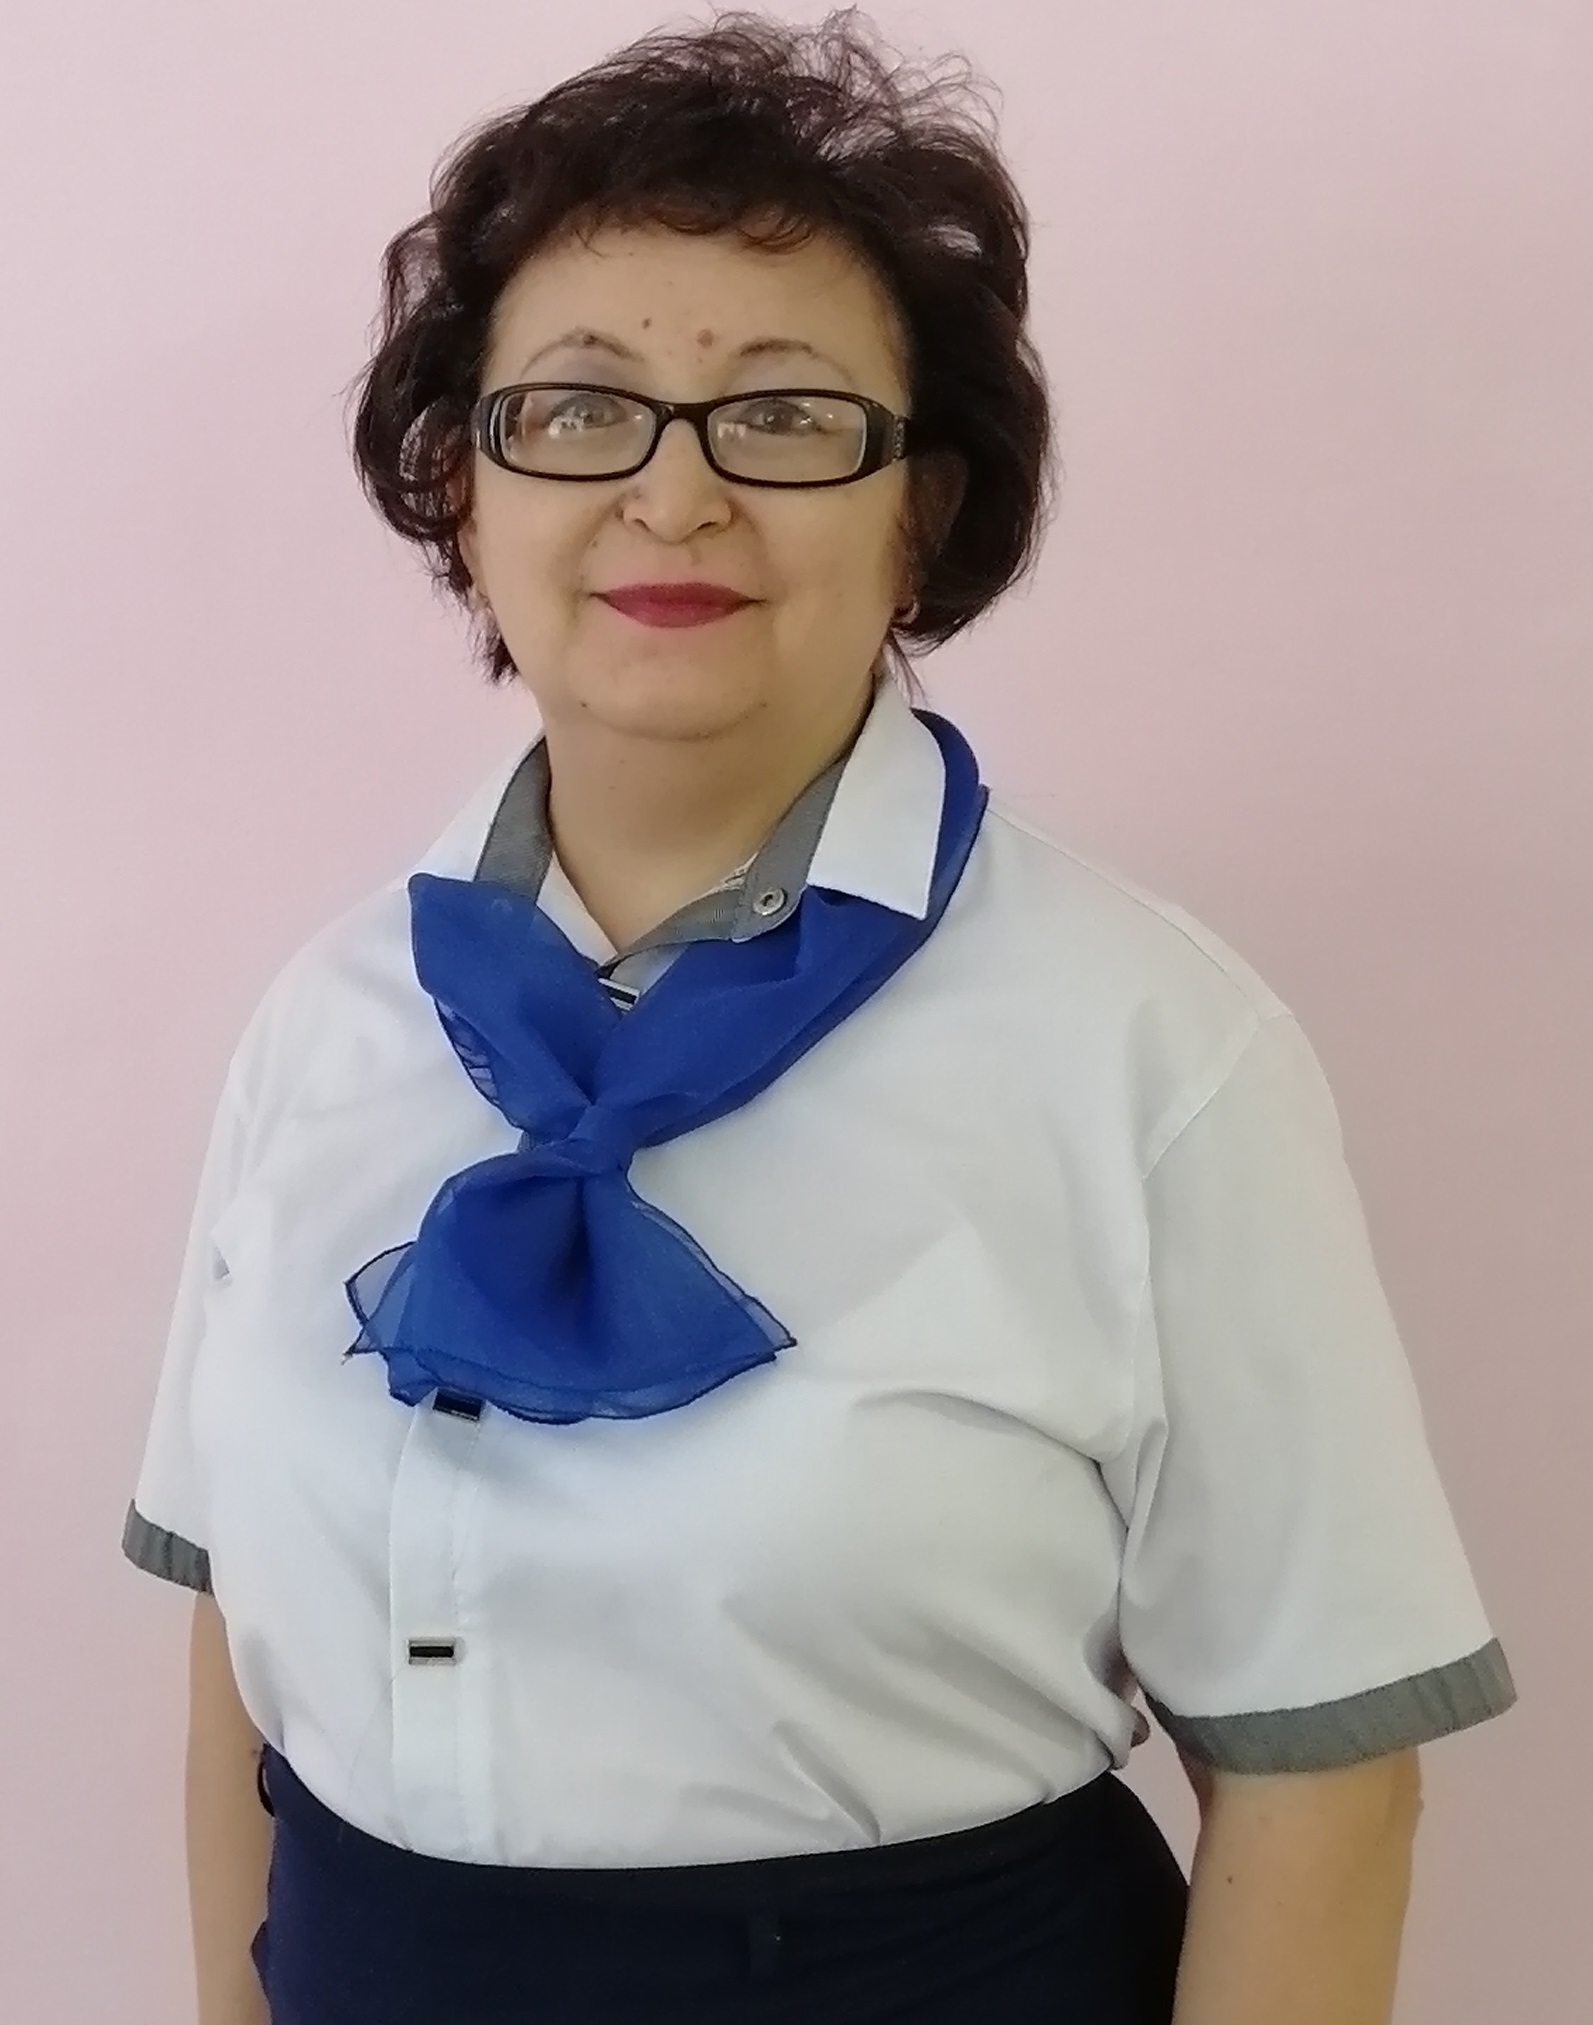 Воспитатель первой категории Ахмедьянова Лариса Маратовна.